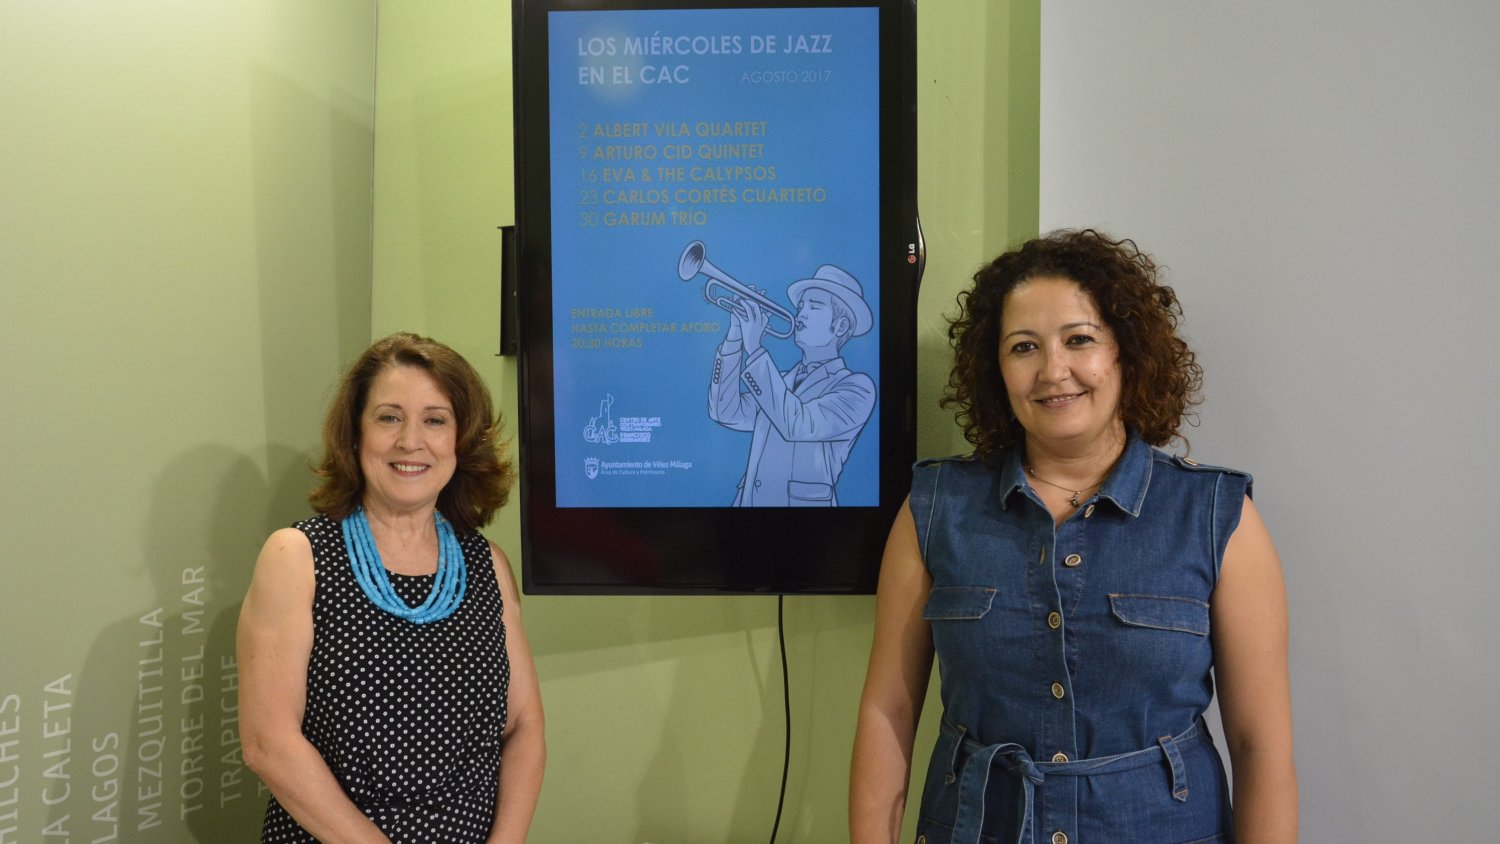 El Centro de Arte Contemporáneo de Vélez-Málaga continúa con el ciclo de miércoles de jazz